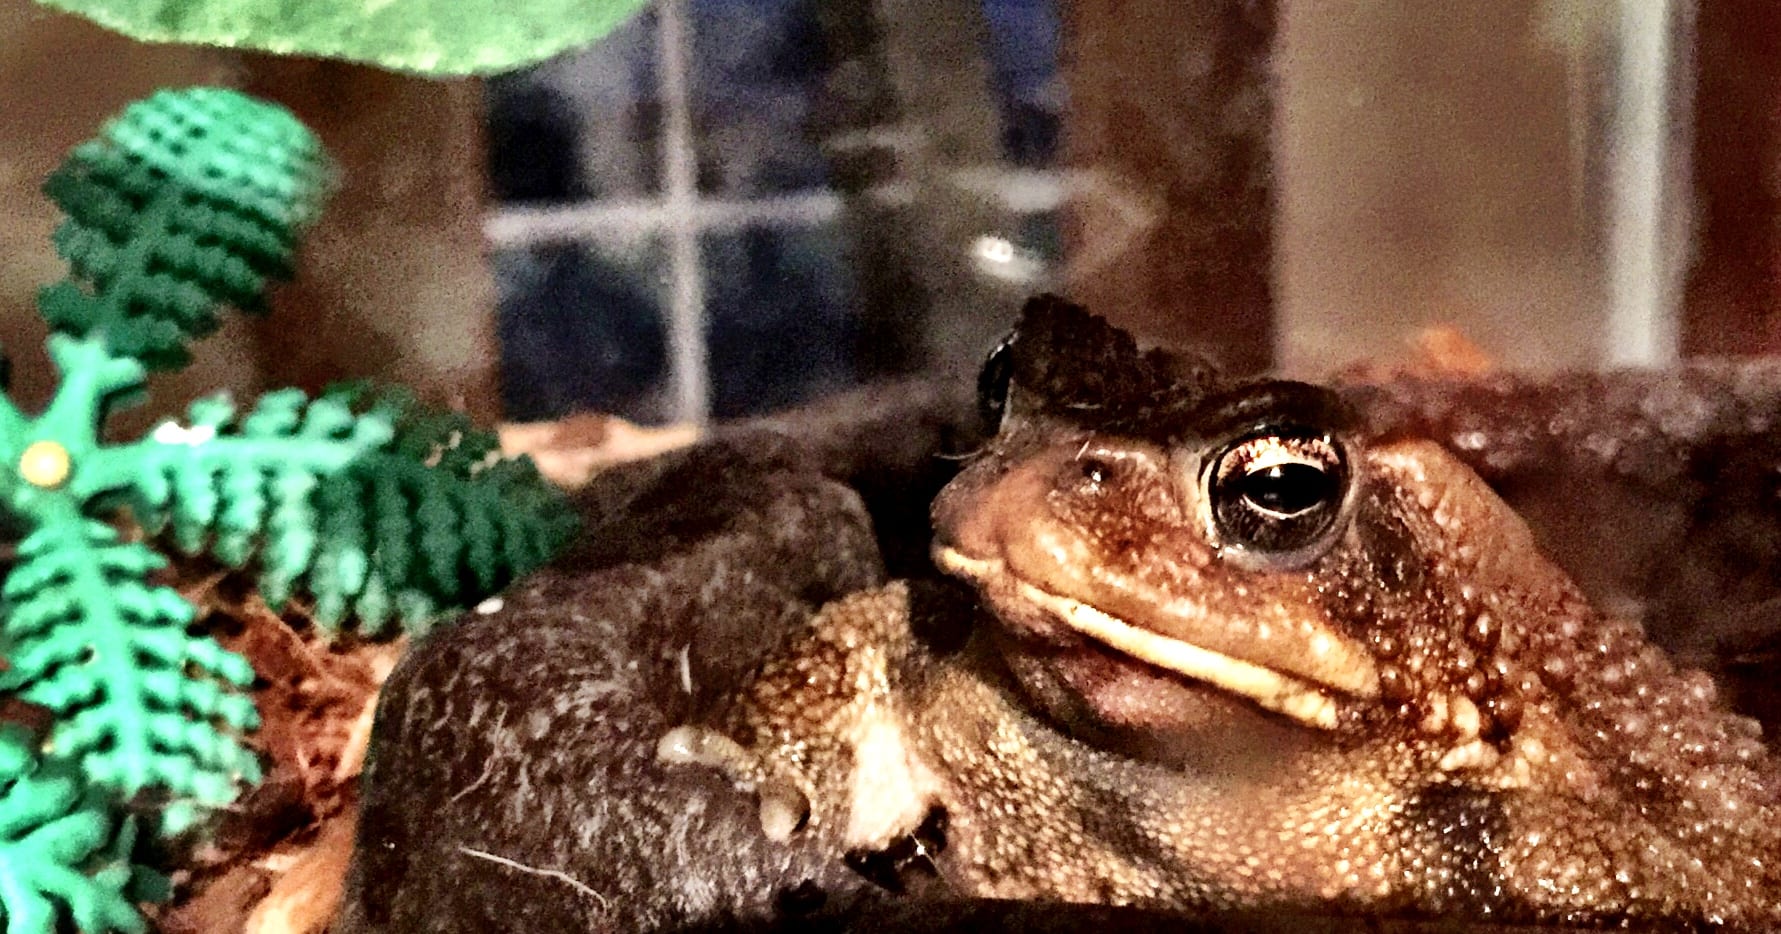 Daniel’s frog is growing up